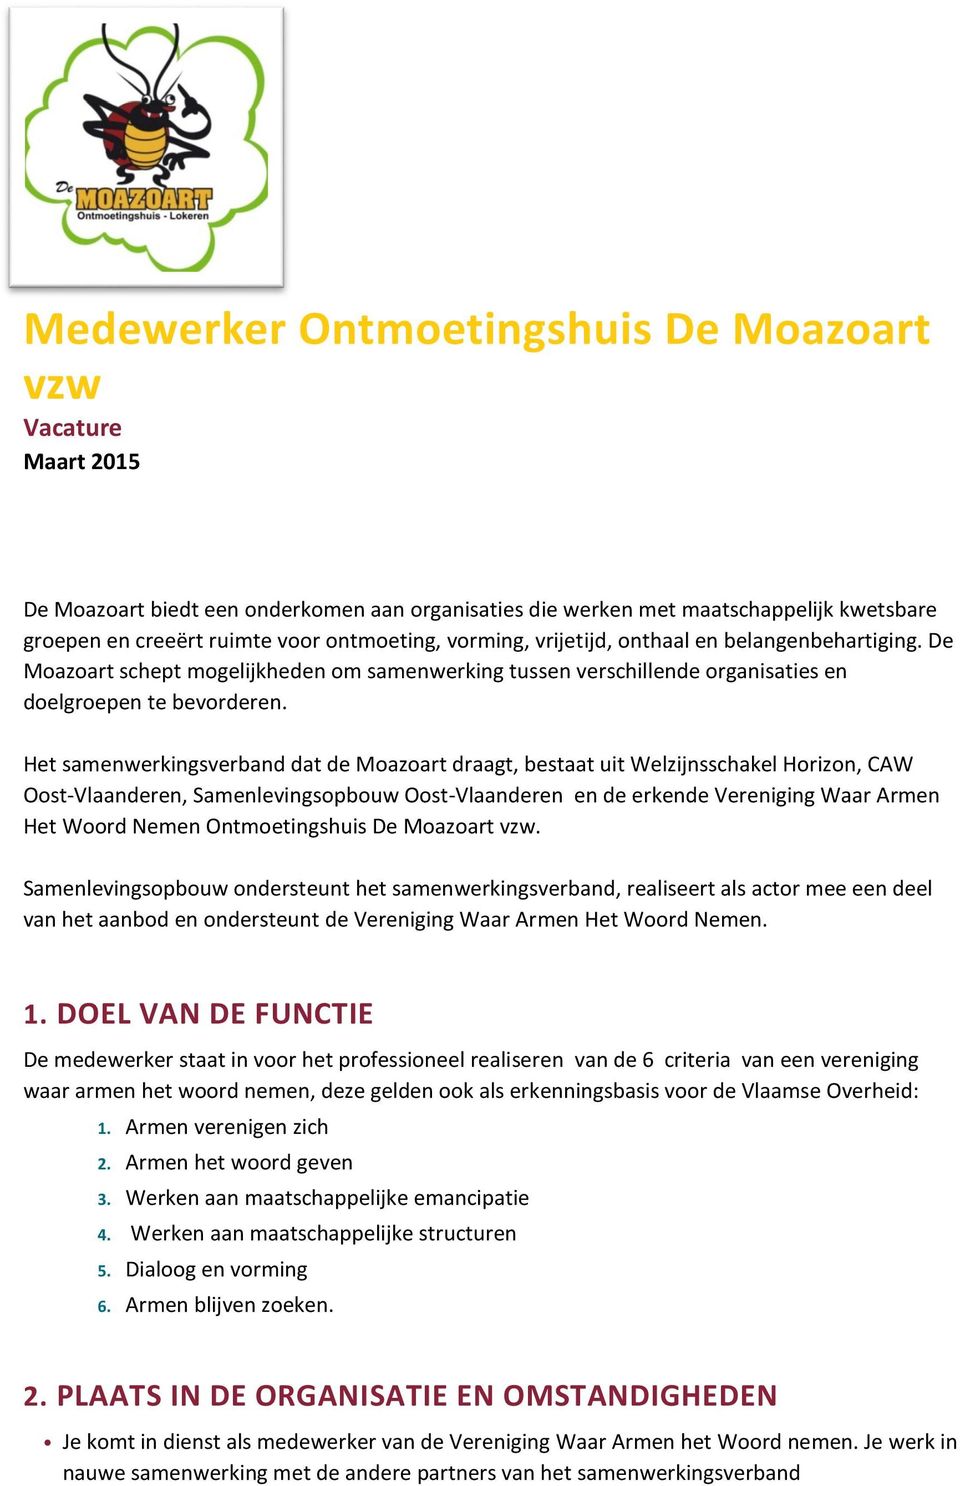 Het samenwerkingsverband dat de Moazoart draagt, bestaat uit Welzijnsschakel Horizon, CAW Oost-Vlaanderen, Samenlevingsopbouw Oost-Vlaanderen en de erkende Vereniging Waar Armen Het Woord Nemen